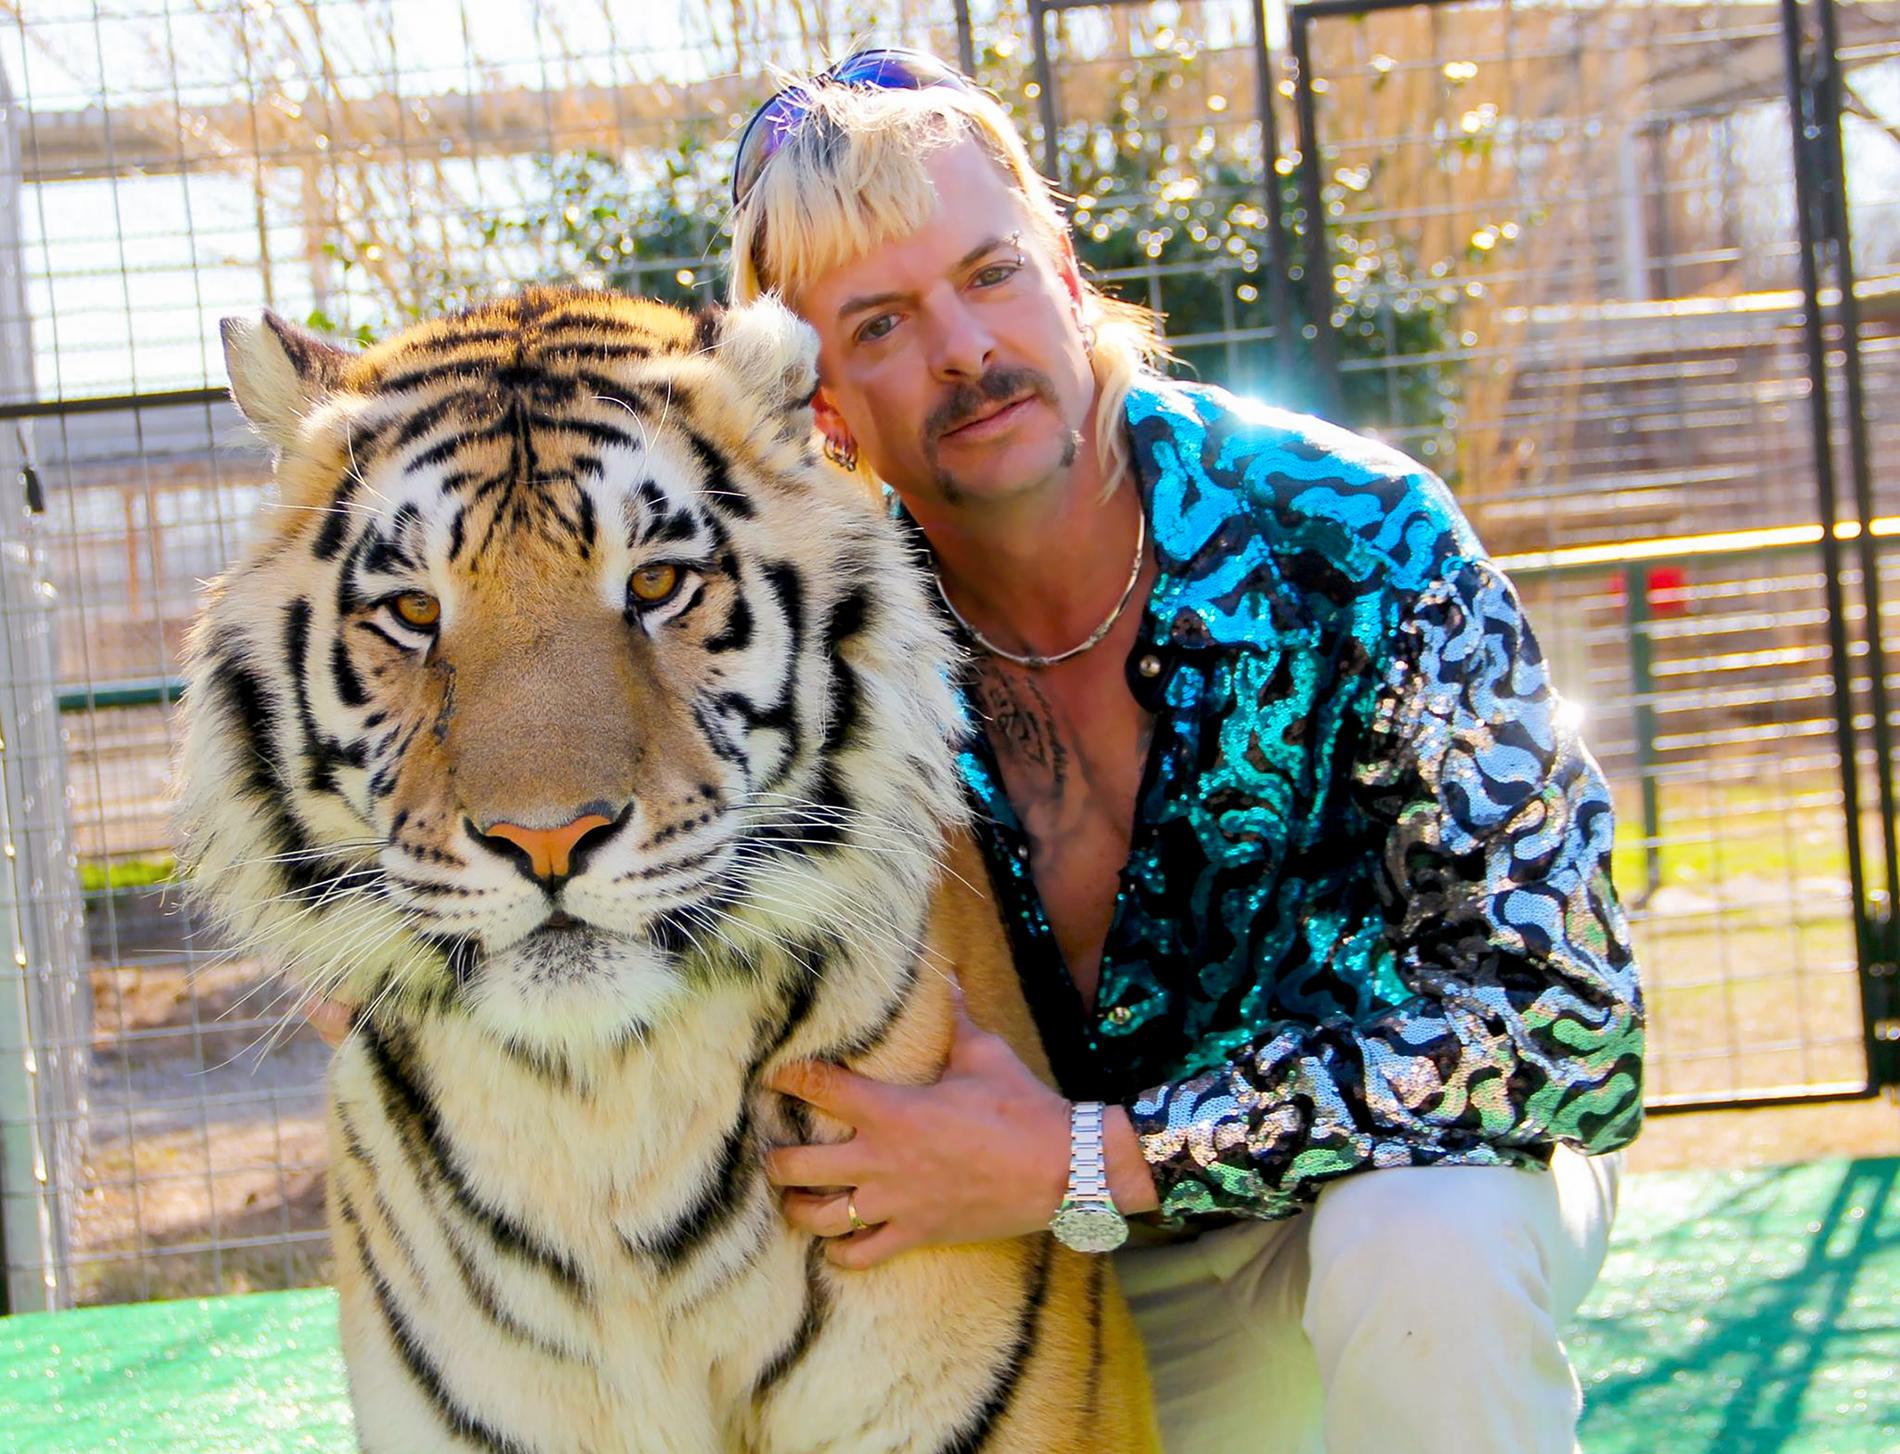 Joe Exotic med tiger i ”Tiger king”